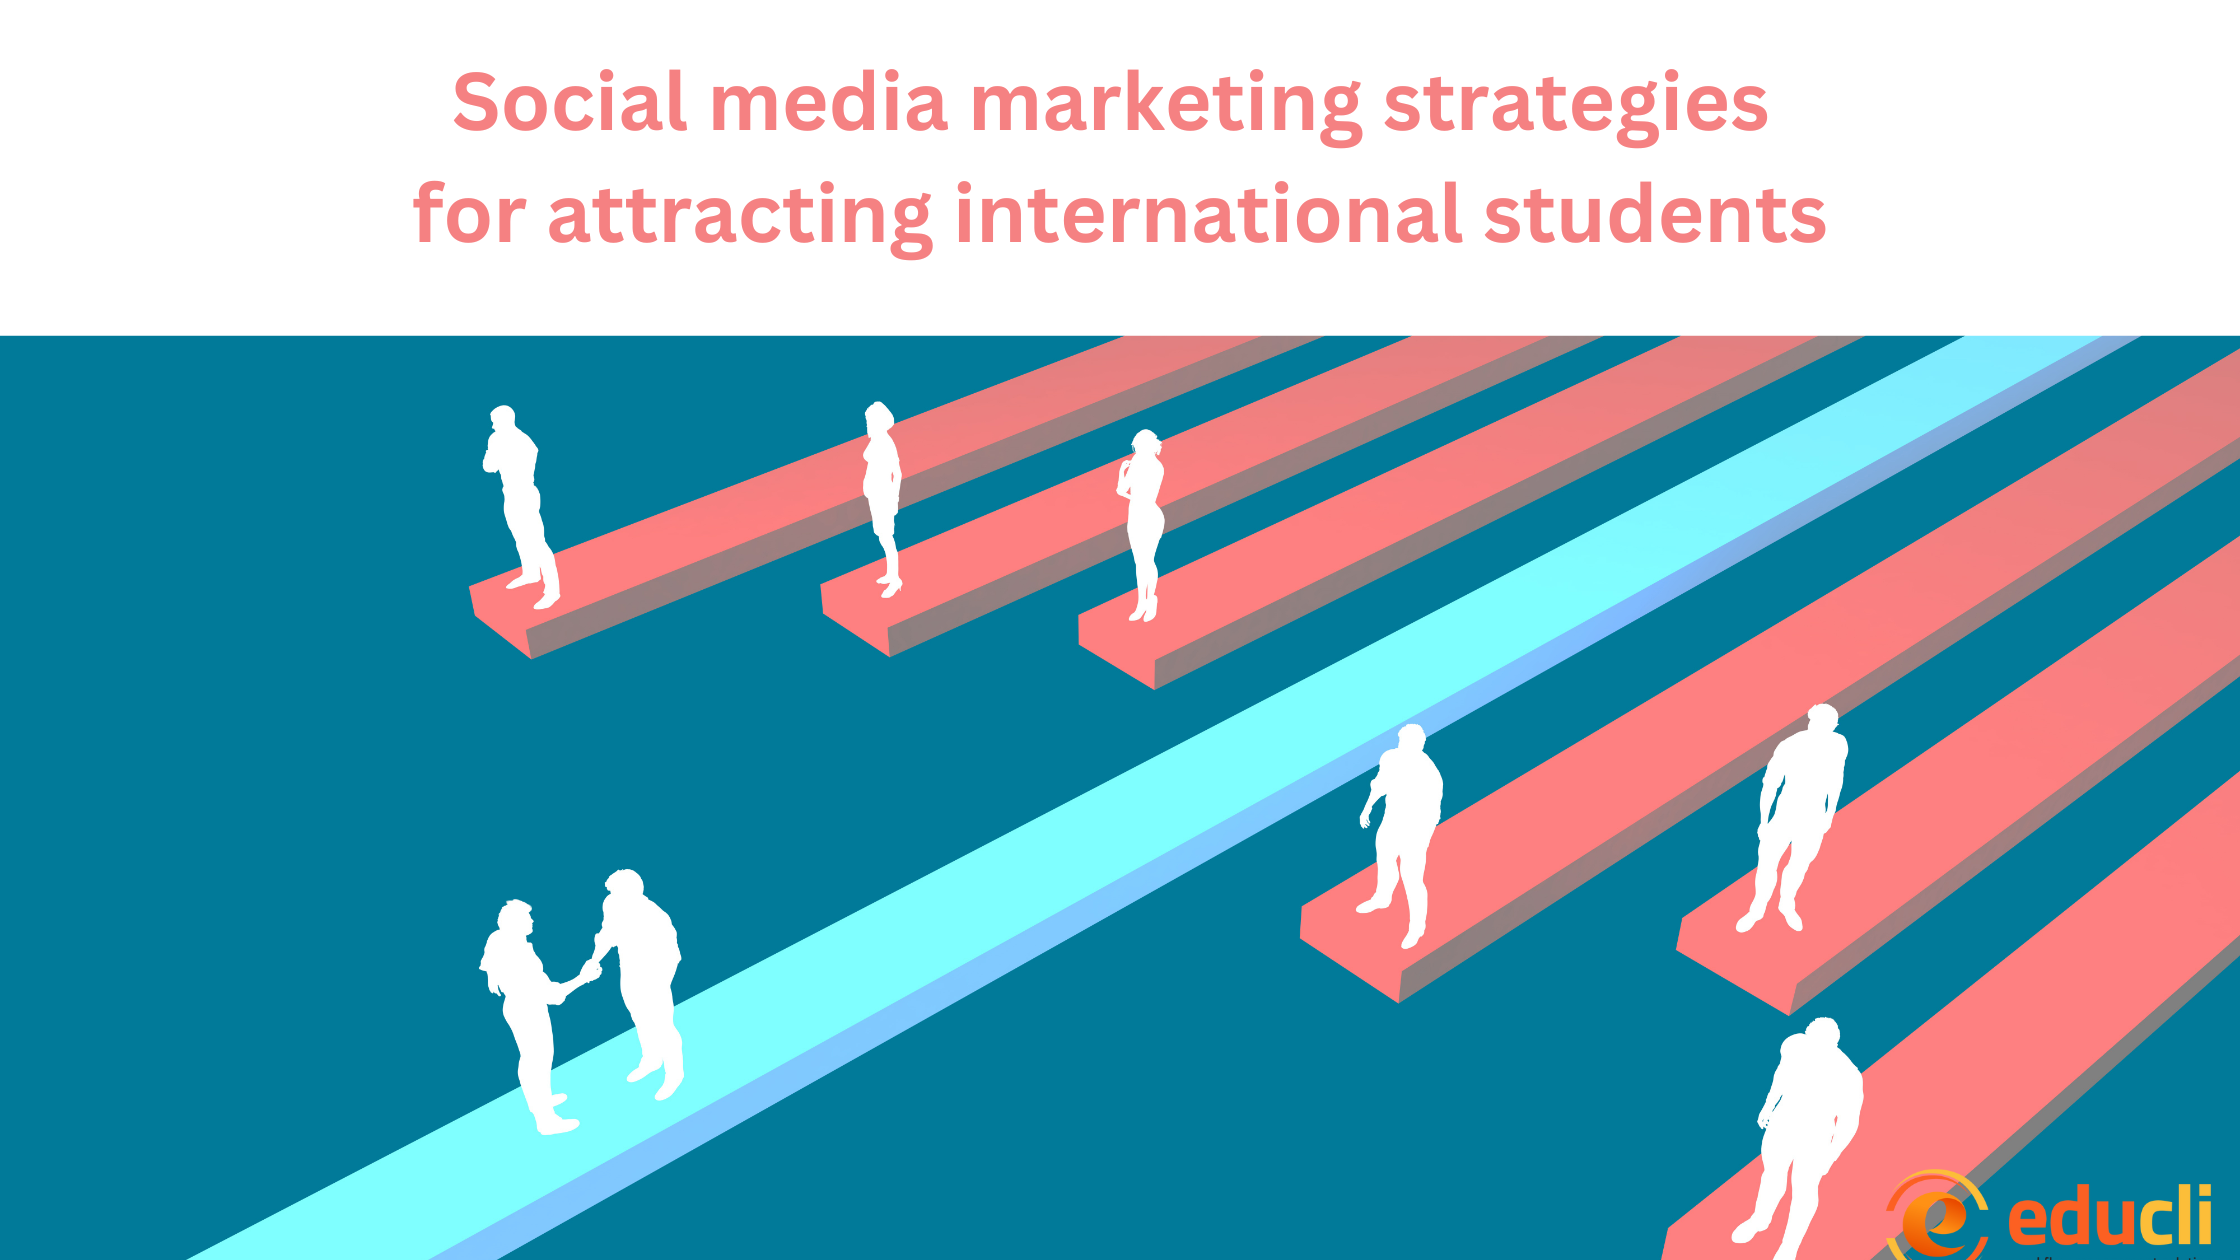 SOCIAL MEDIA MARKETING STRATEGIES FOR ATTRACTING INTERNATIONAL STUDENTS